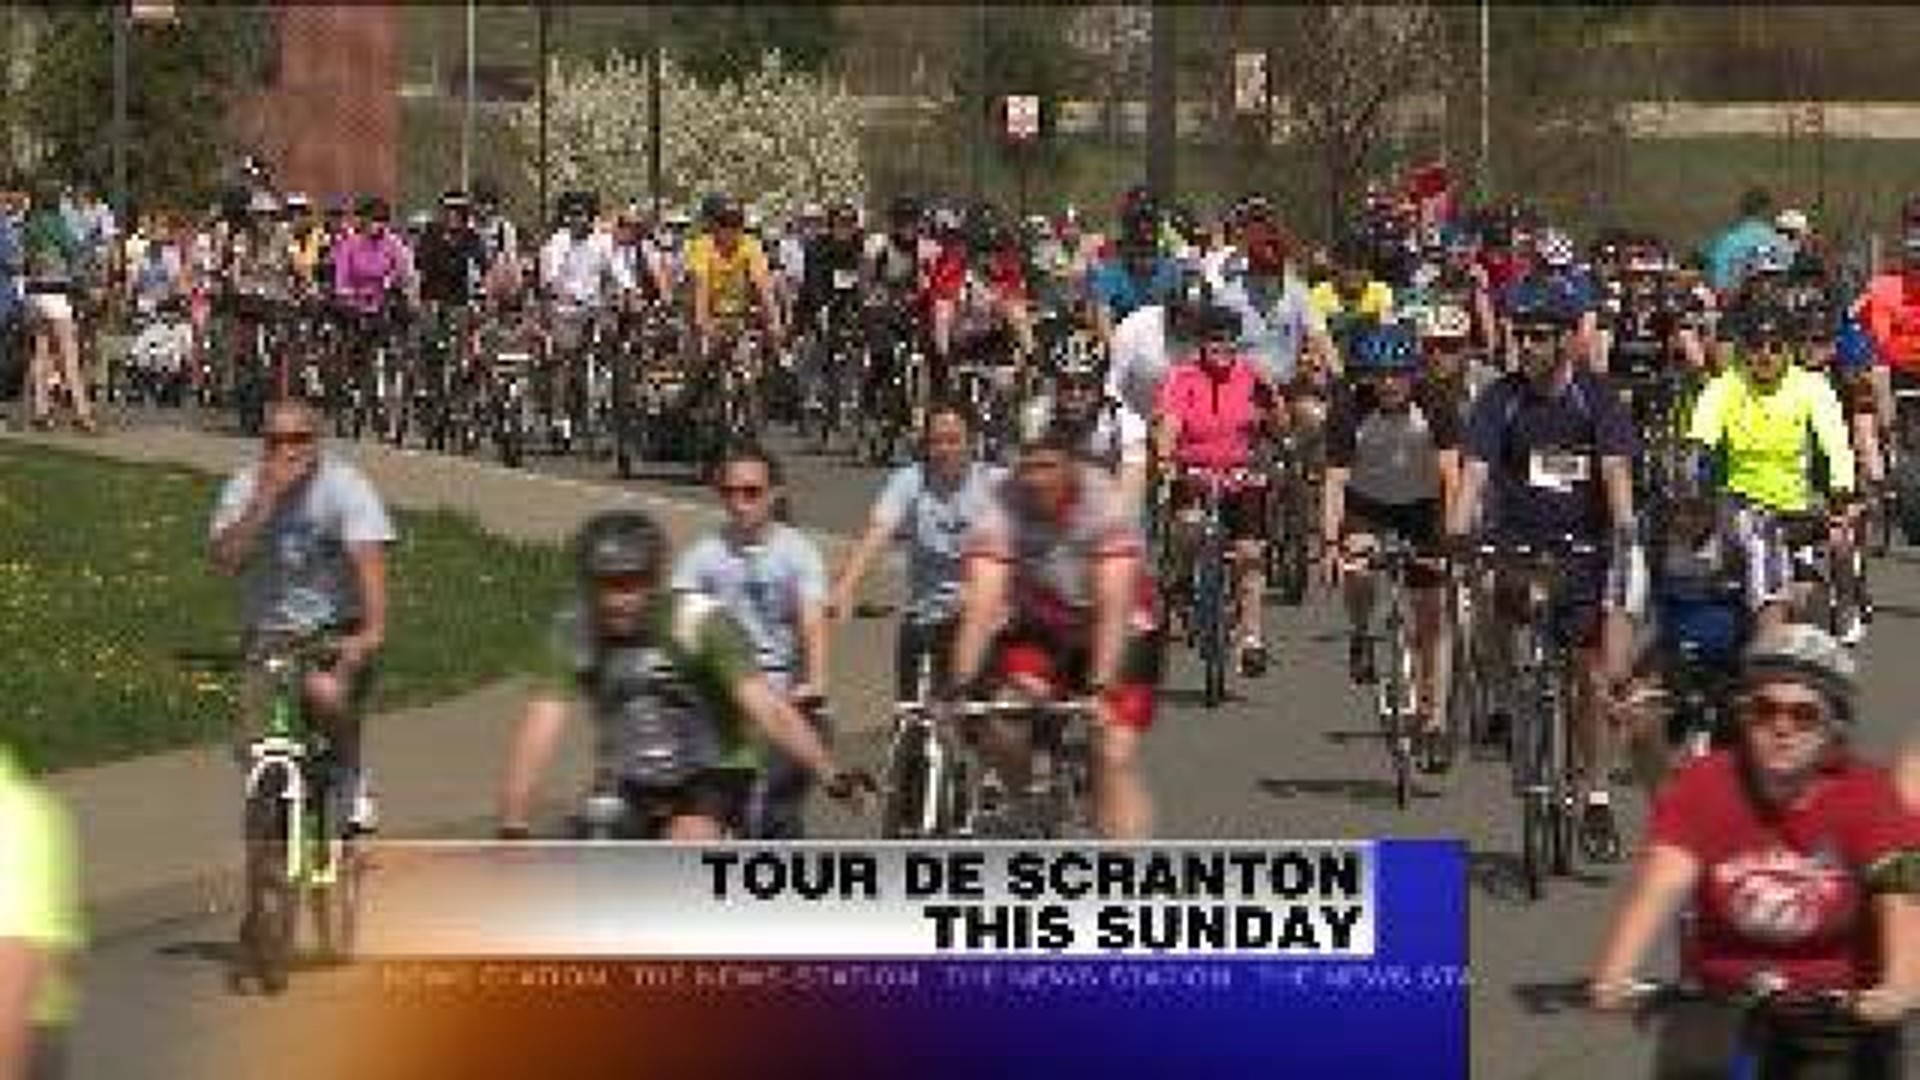 Electric City Gears up For Tour de Scranton